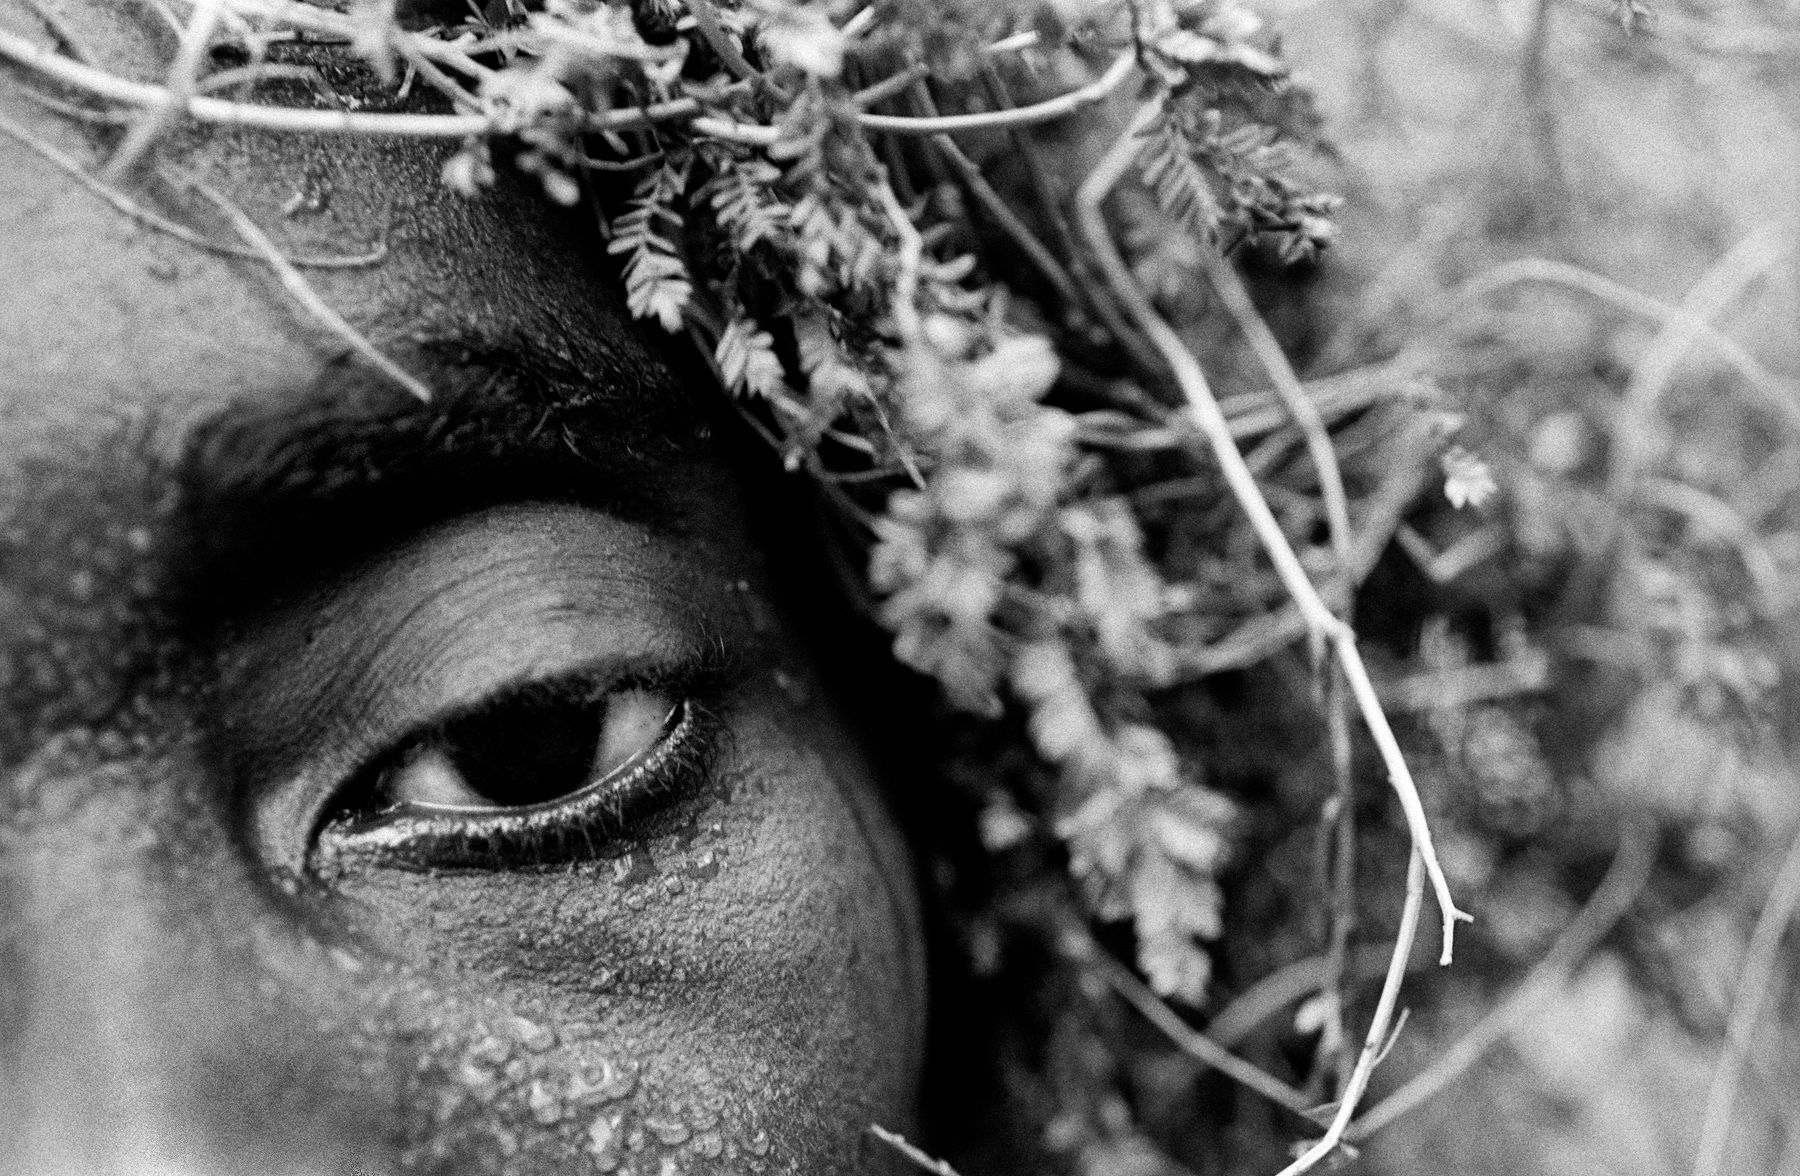 Pygmy Woman / Mpete DRC / 2/25 / 900 USD